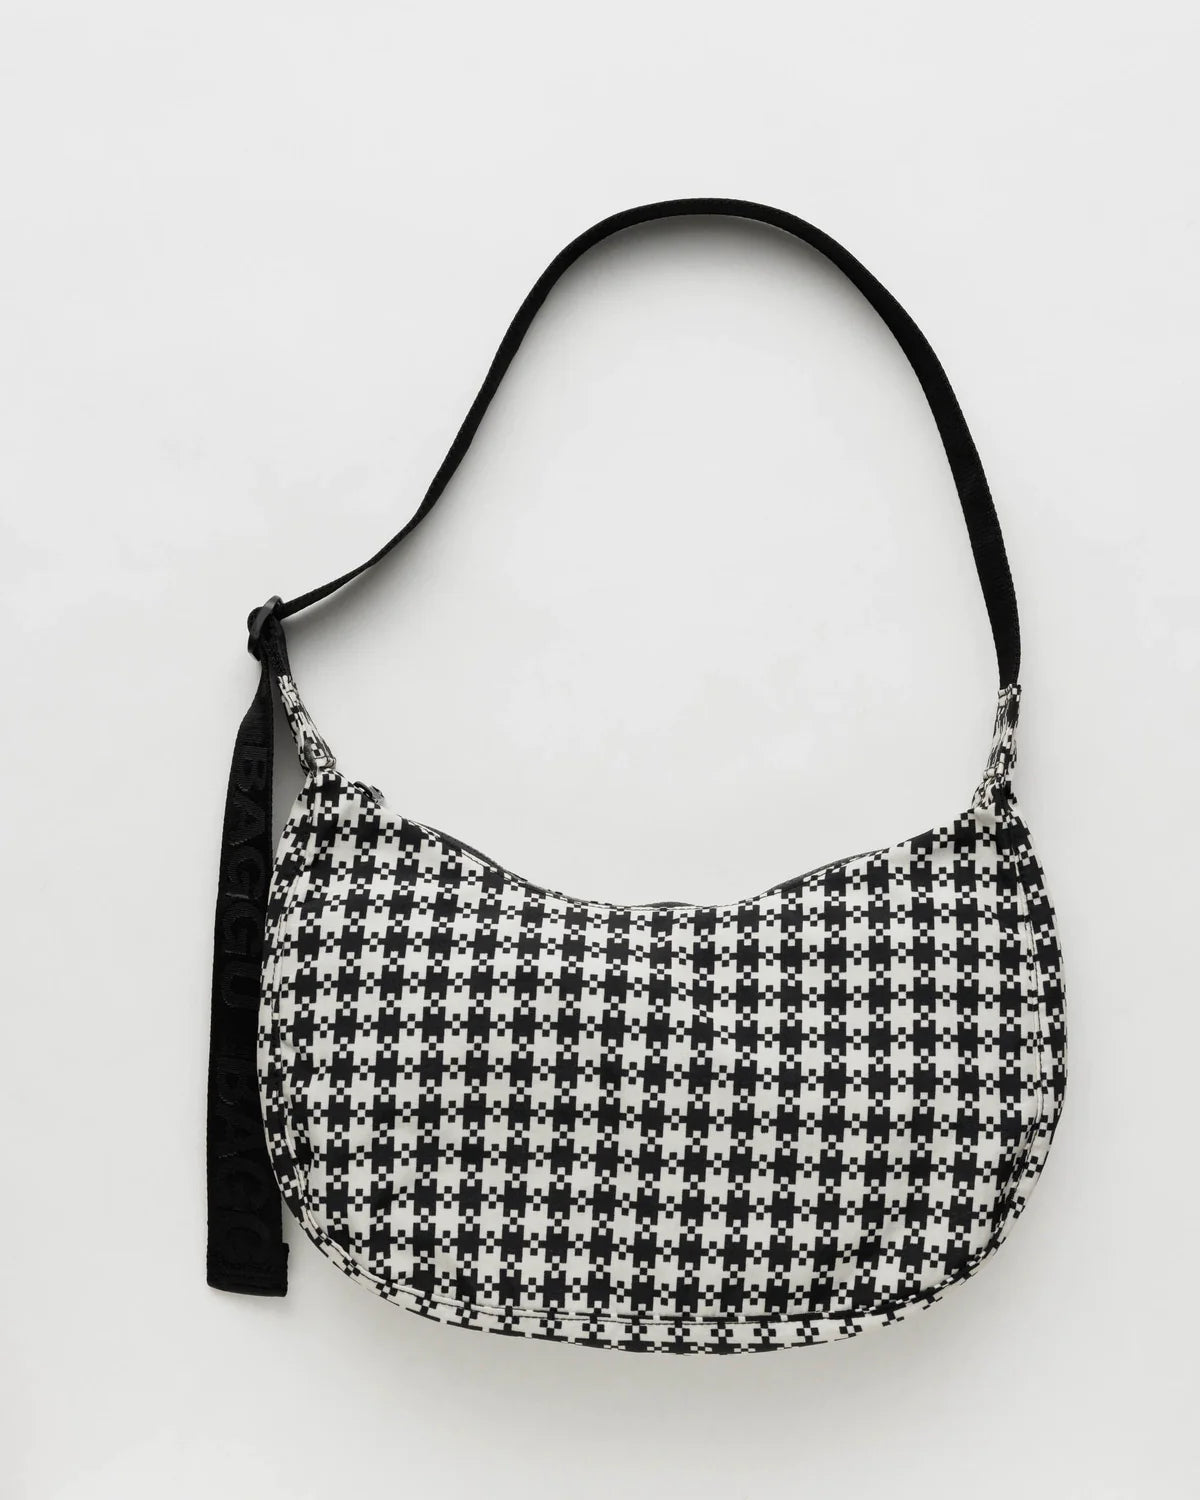 Medium Nylon Crescent Bag - Black & White Gingham